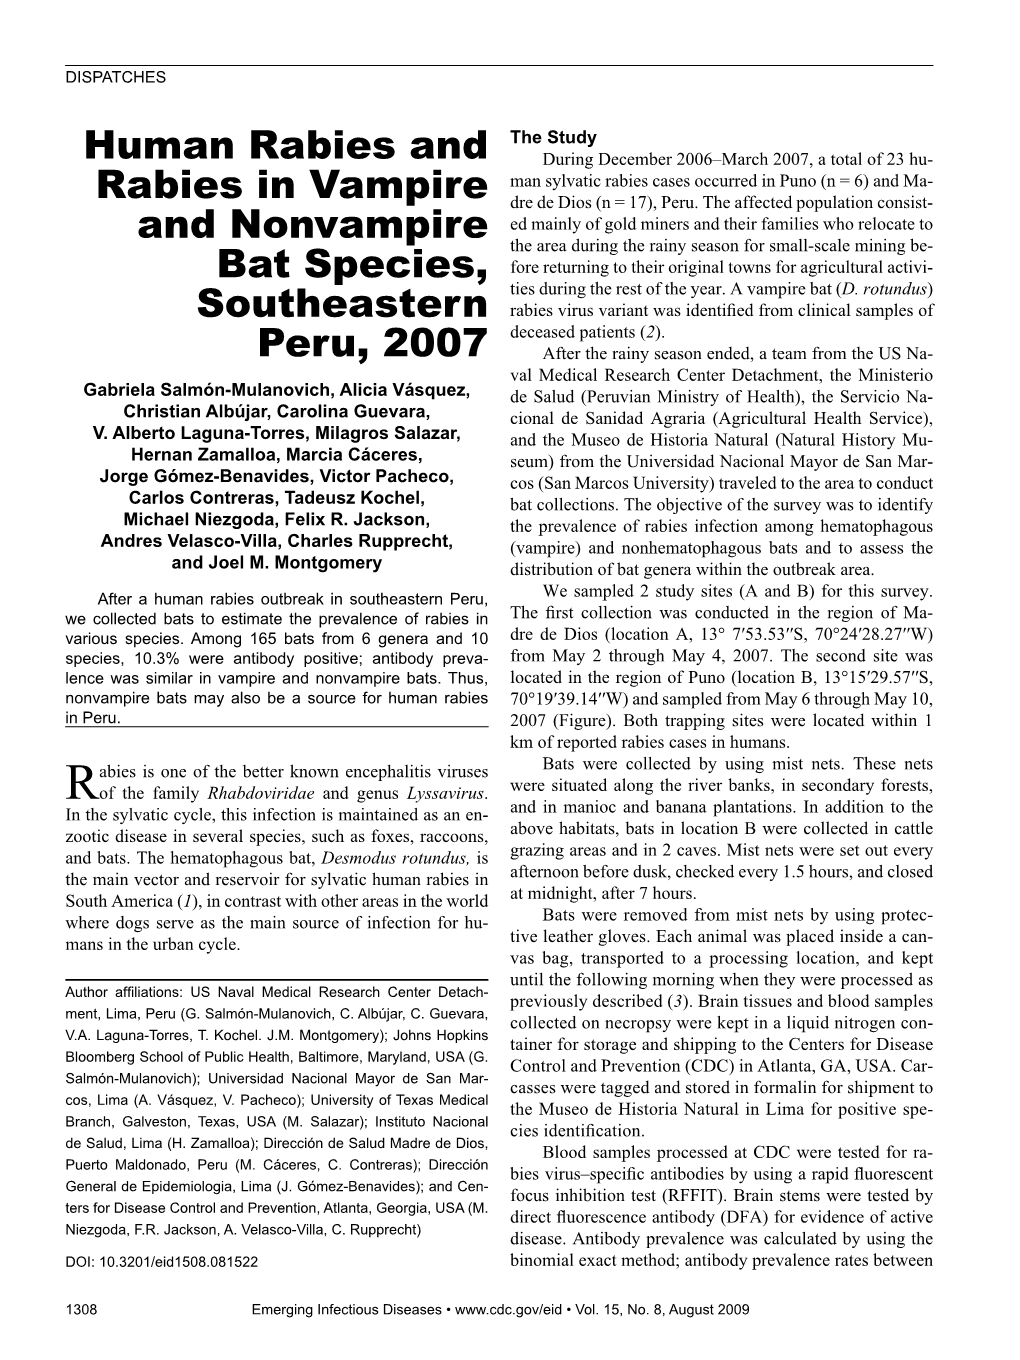 Human Rabies and Rabies in Vampire and Nonvampire Bat